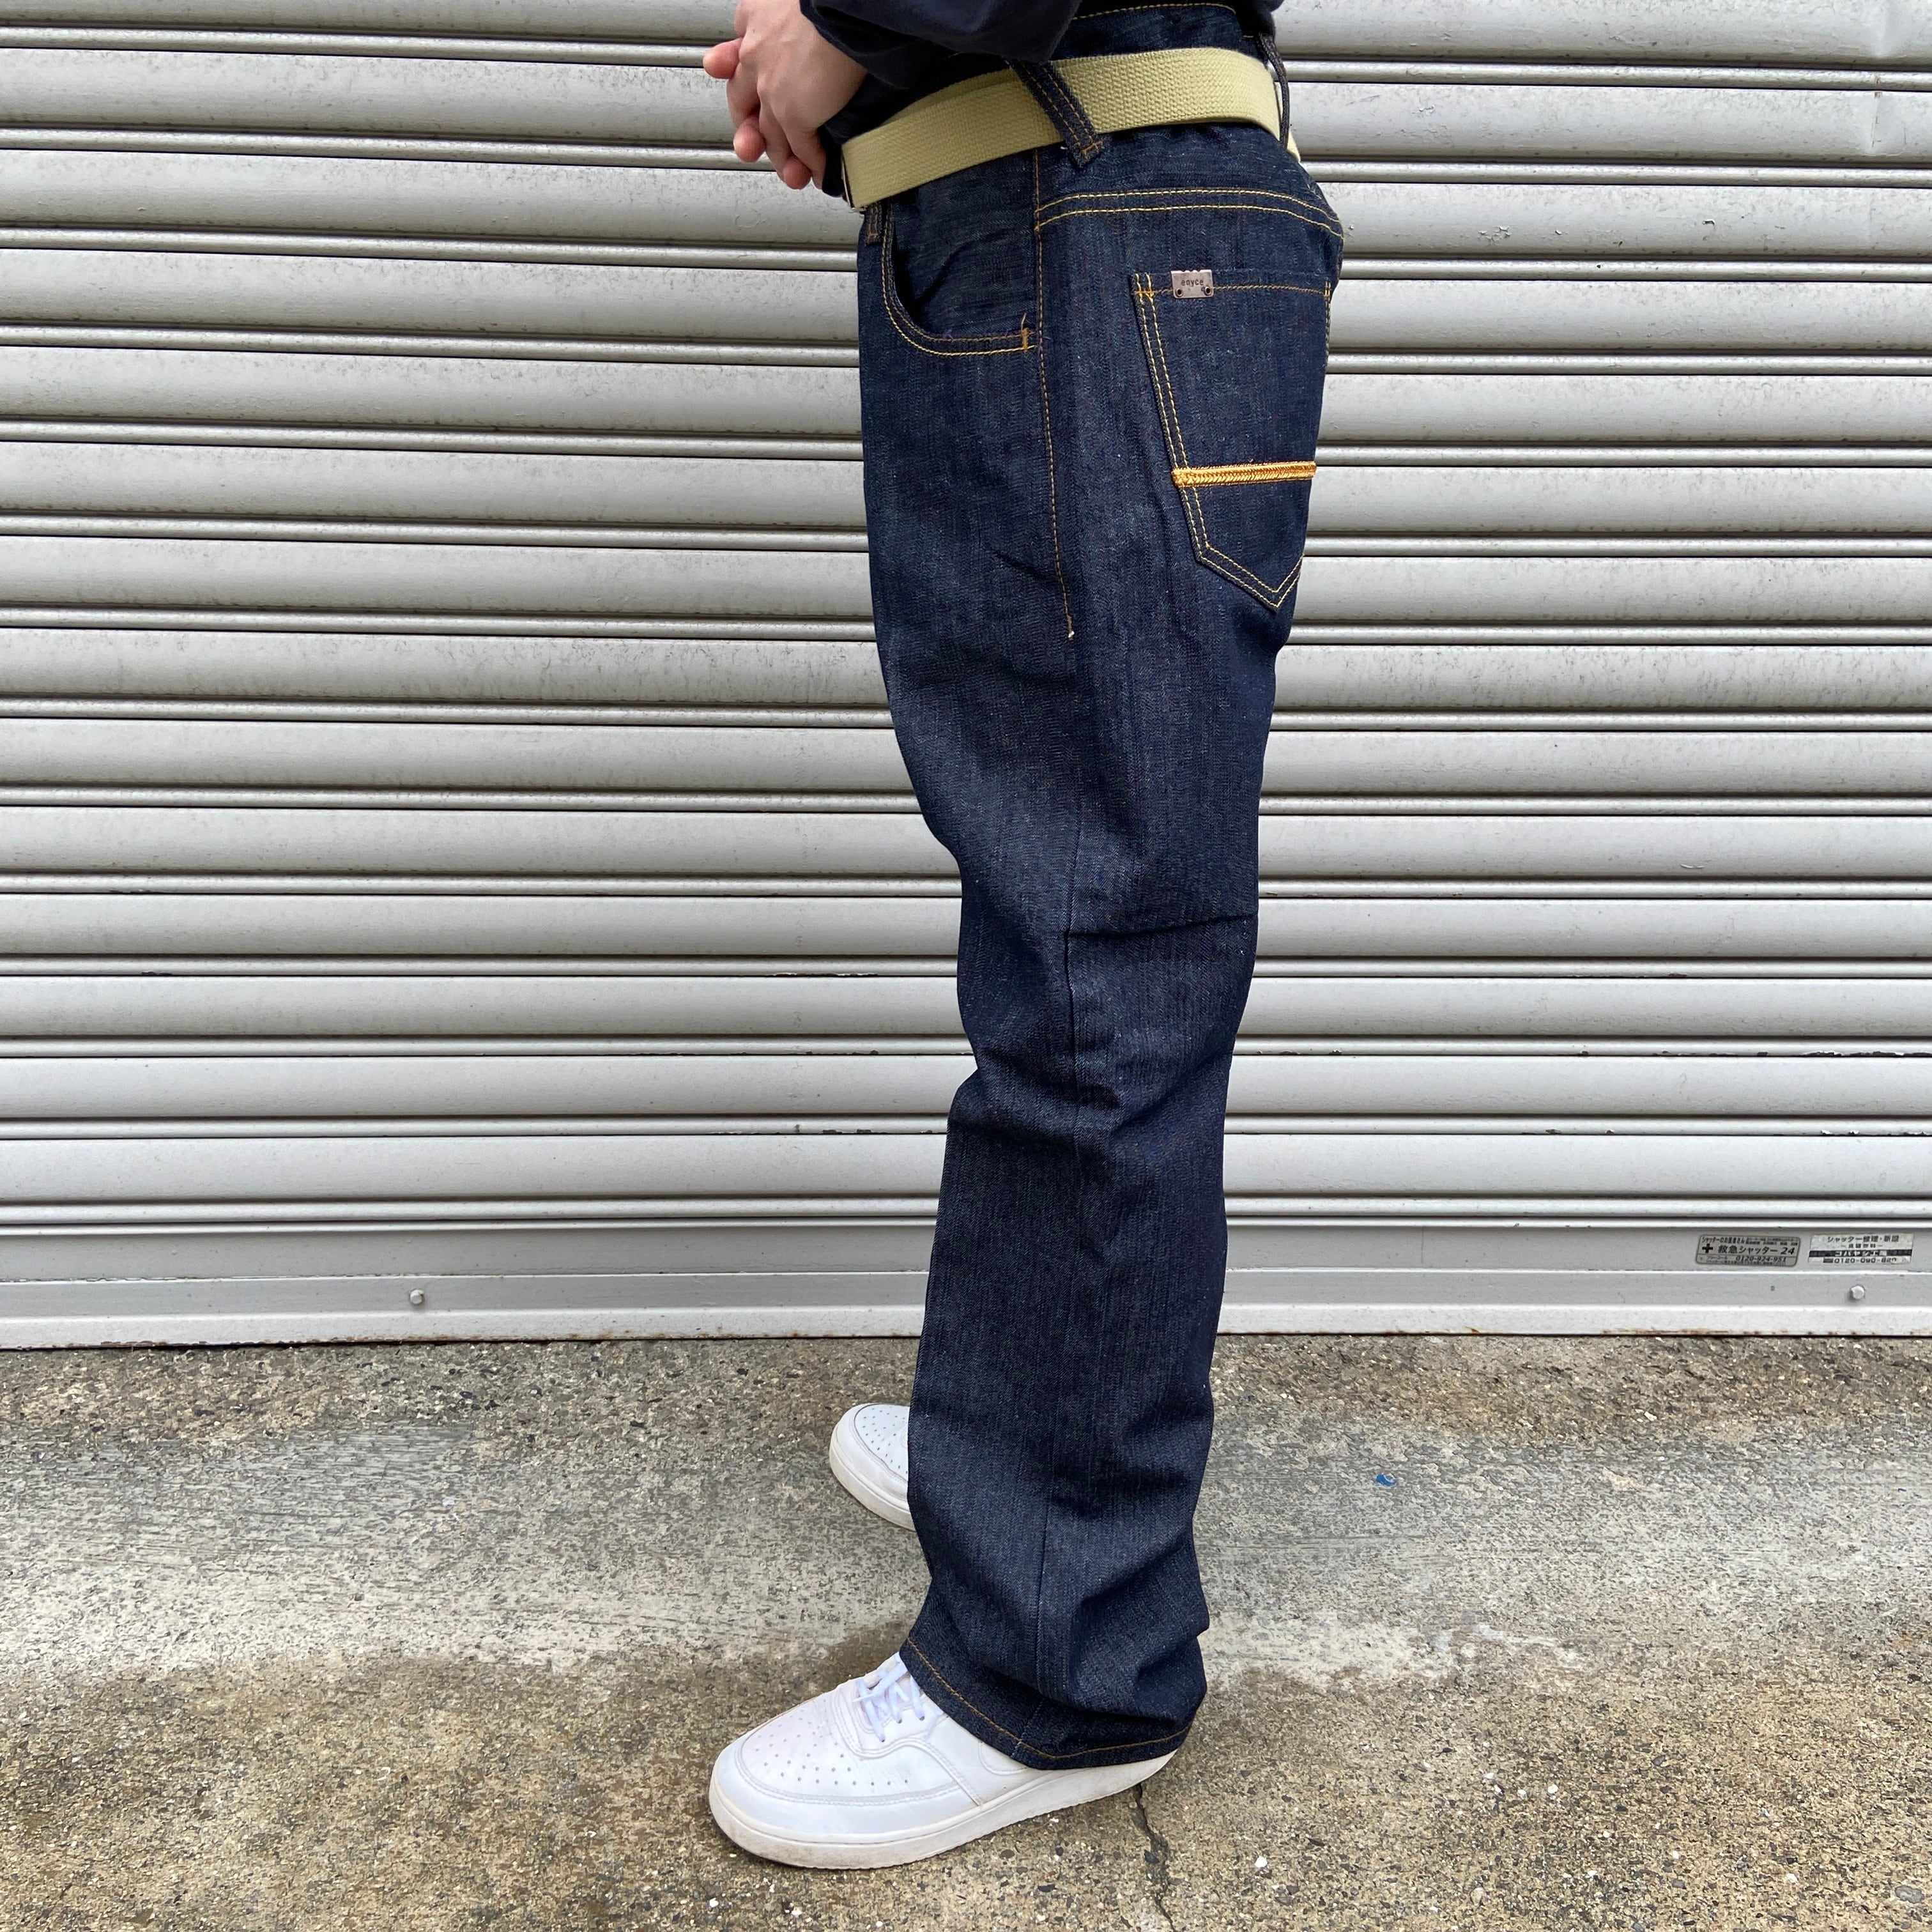 Nudie Jeans デニムパンツ W32 インディゴ 濃紺